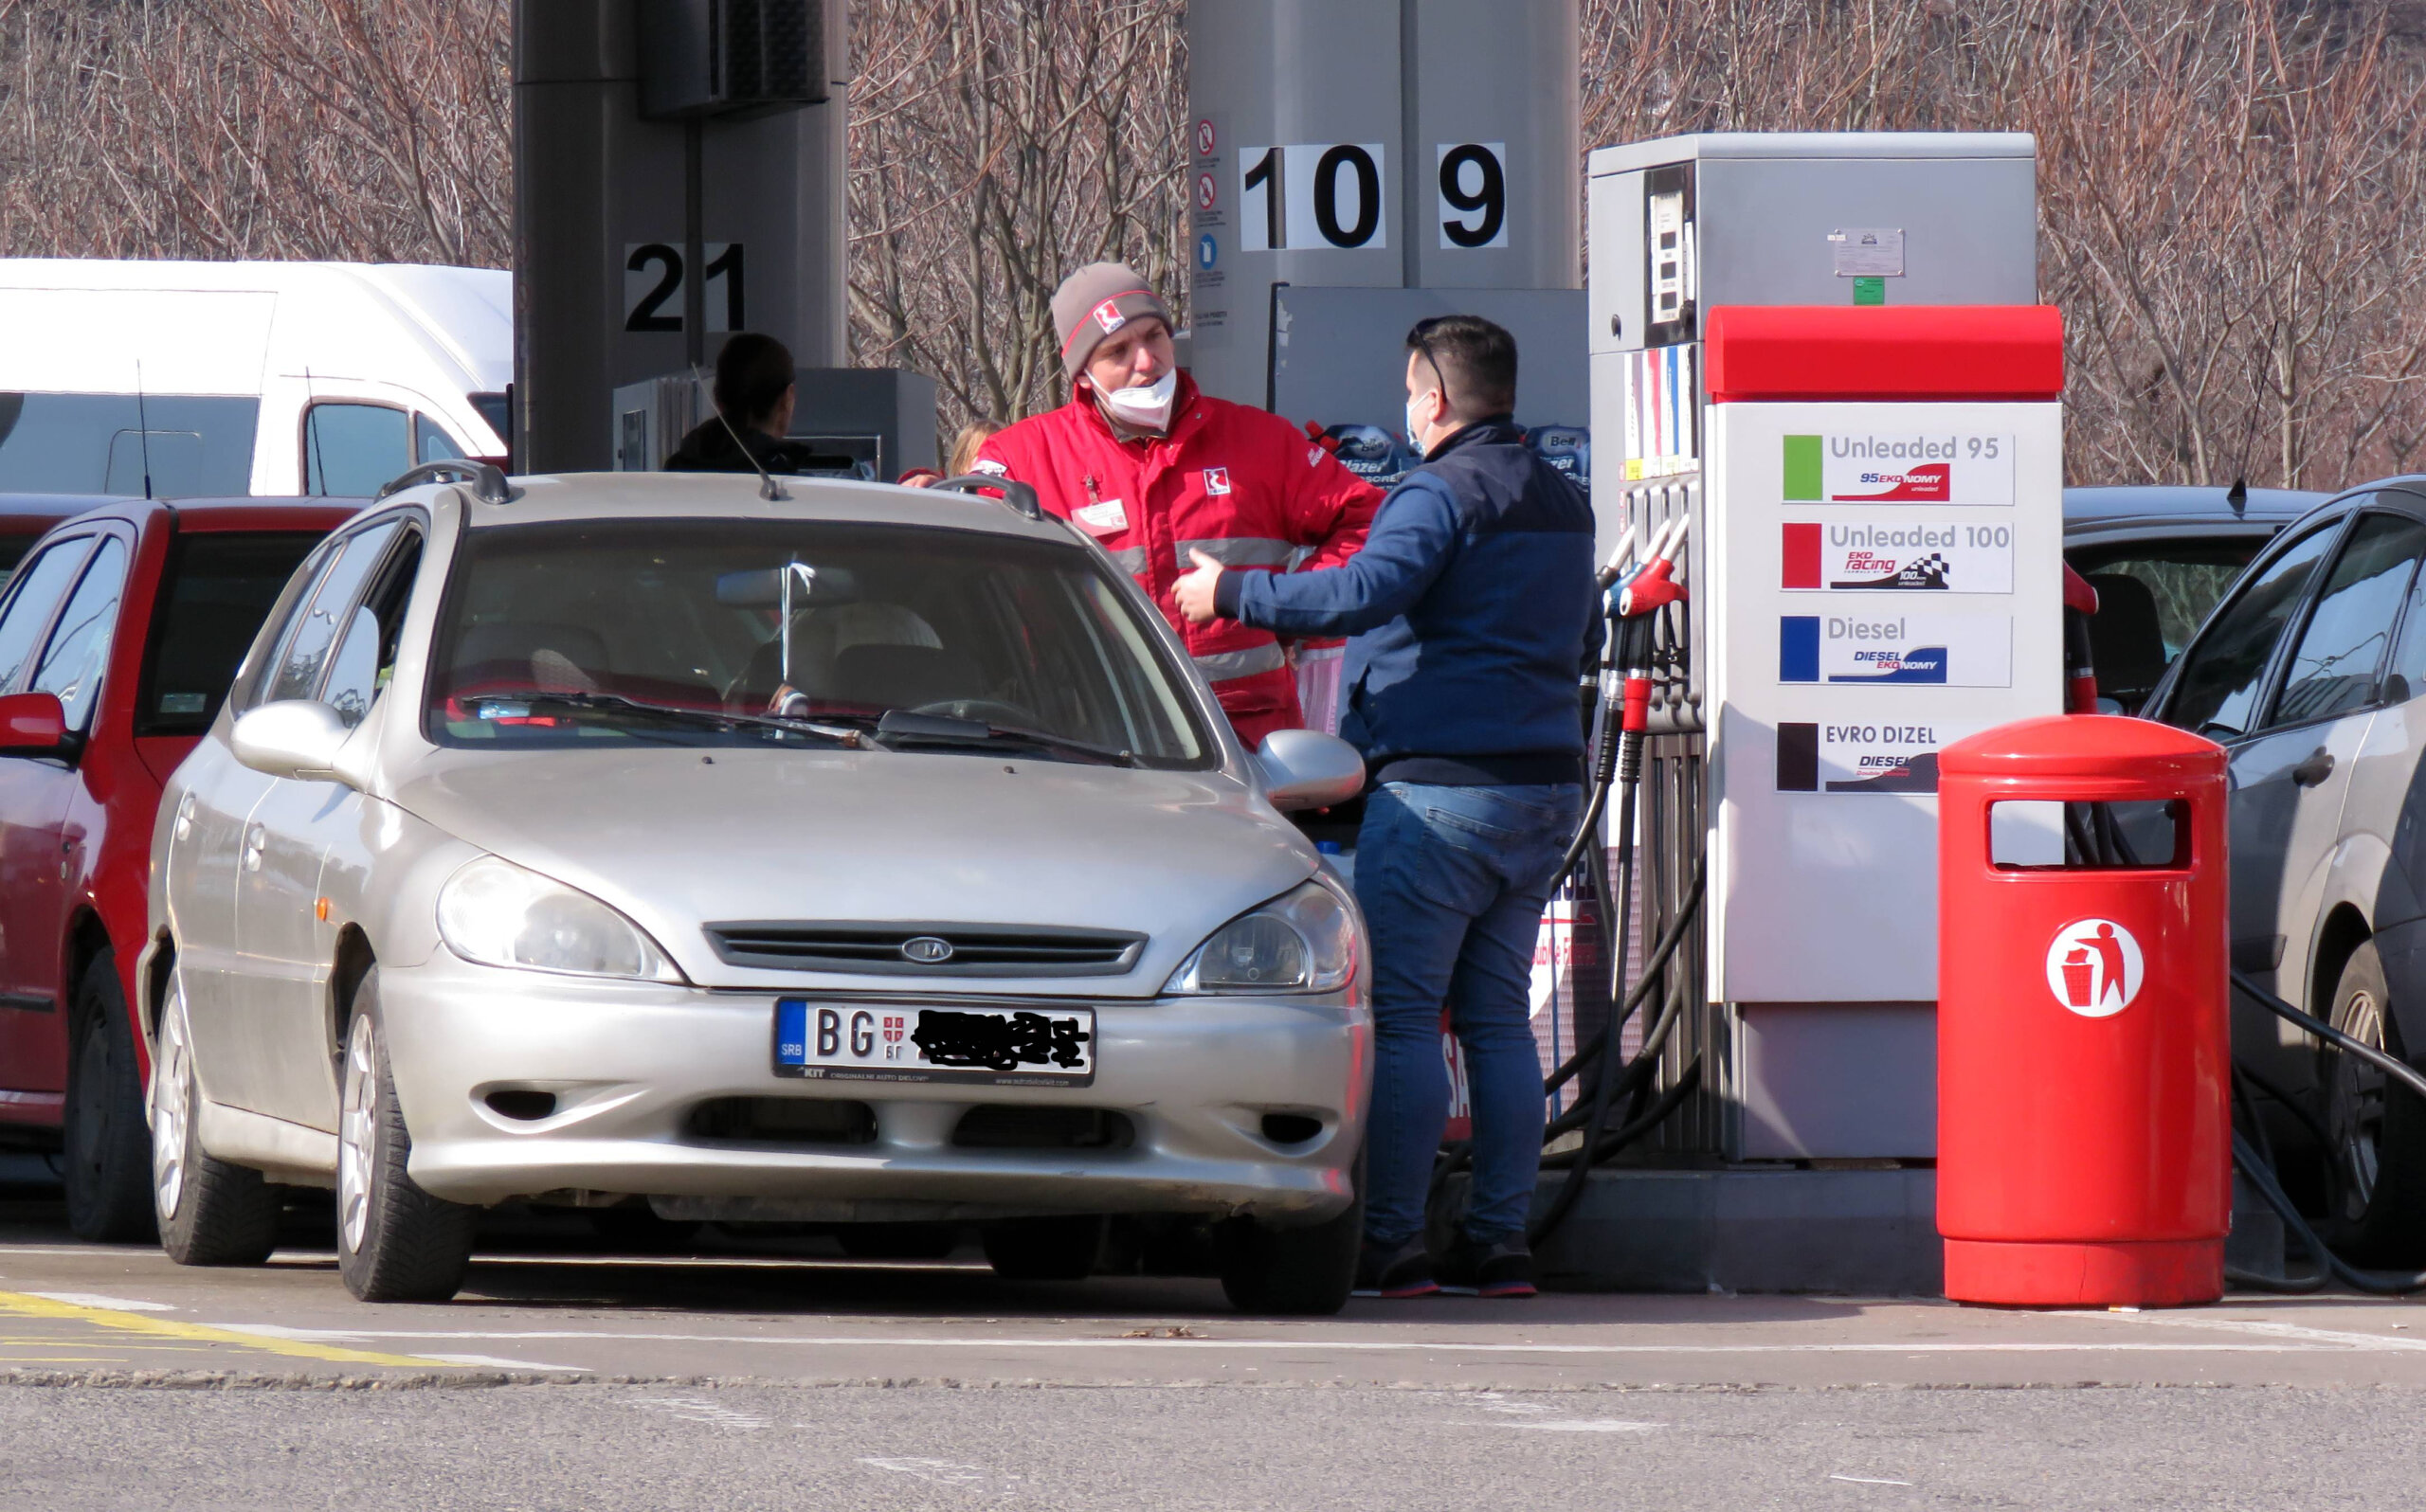 Objavljene nove cene goriva koje će važiti do 26. januara 2